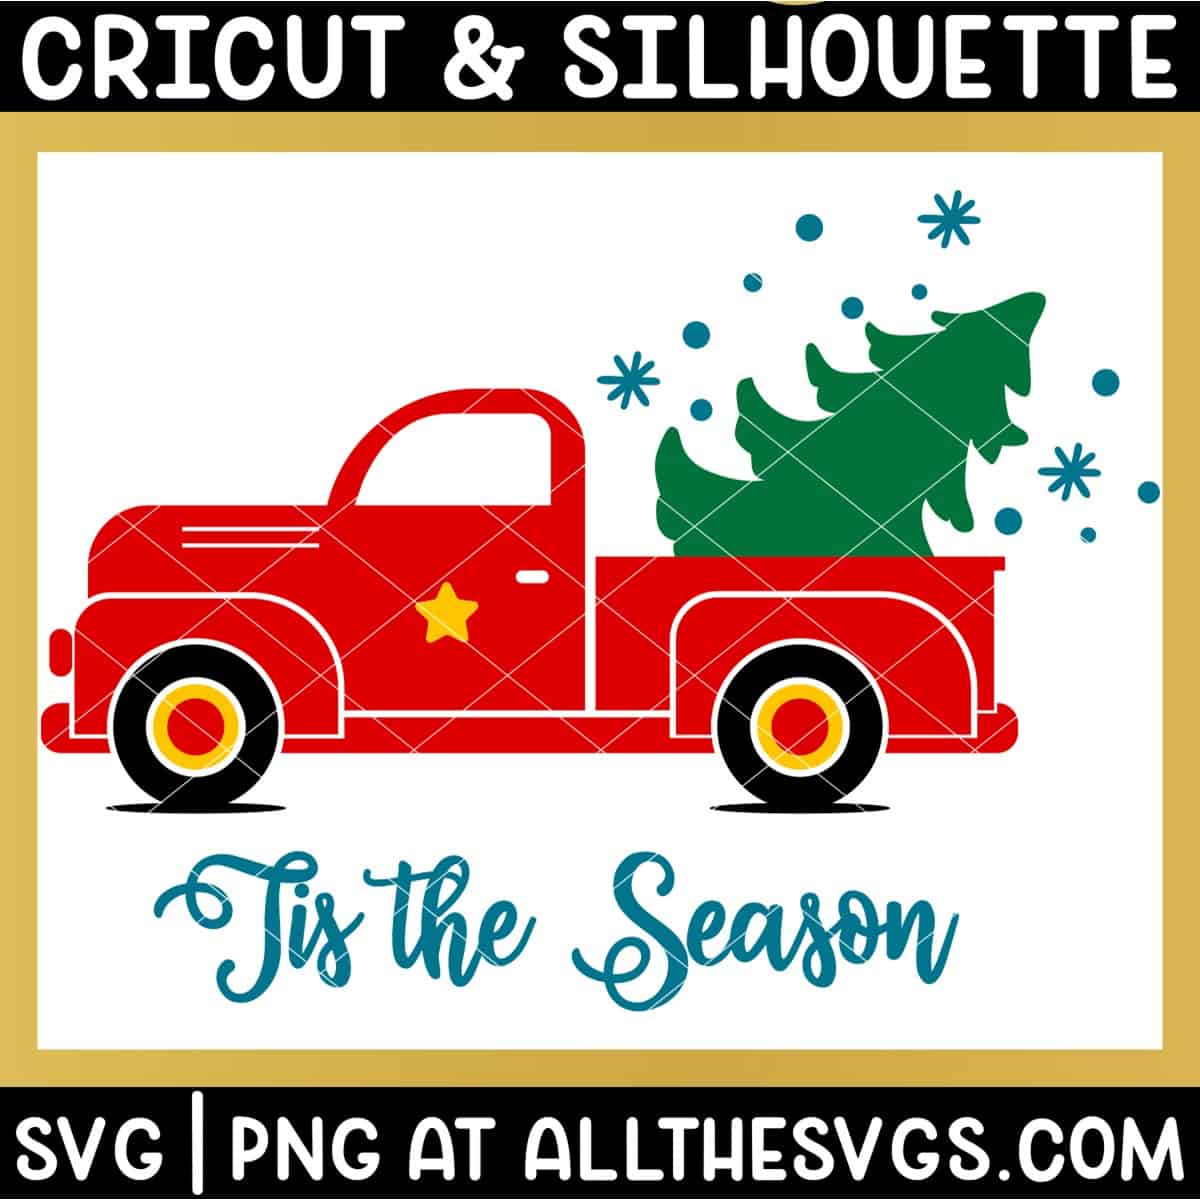 christmas vintage truck svg file with christmas tree, snow, and saying 'tis the season.